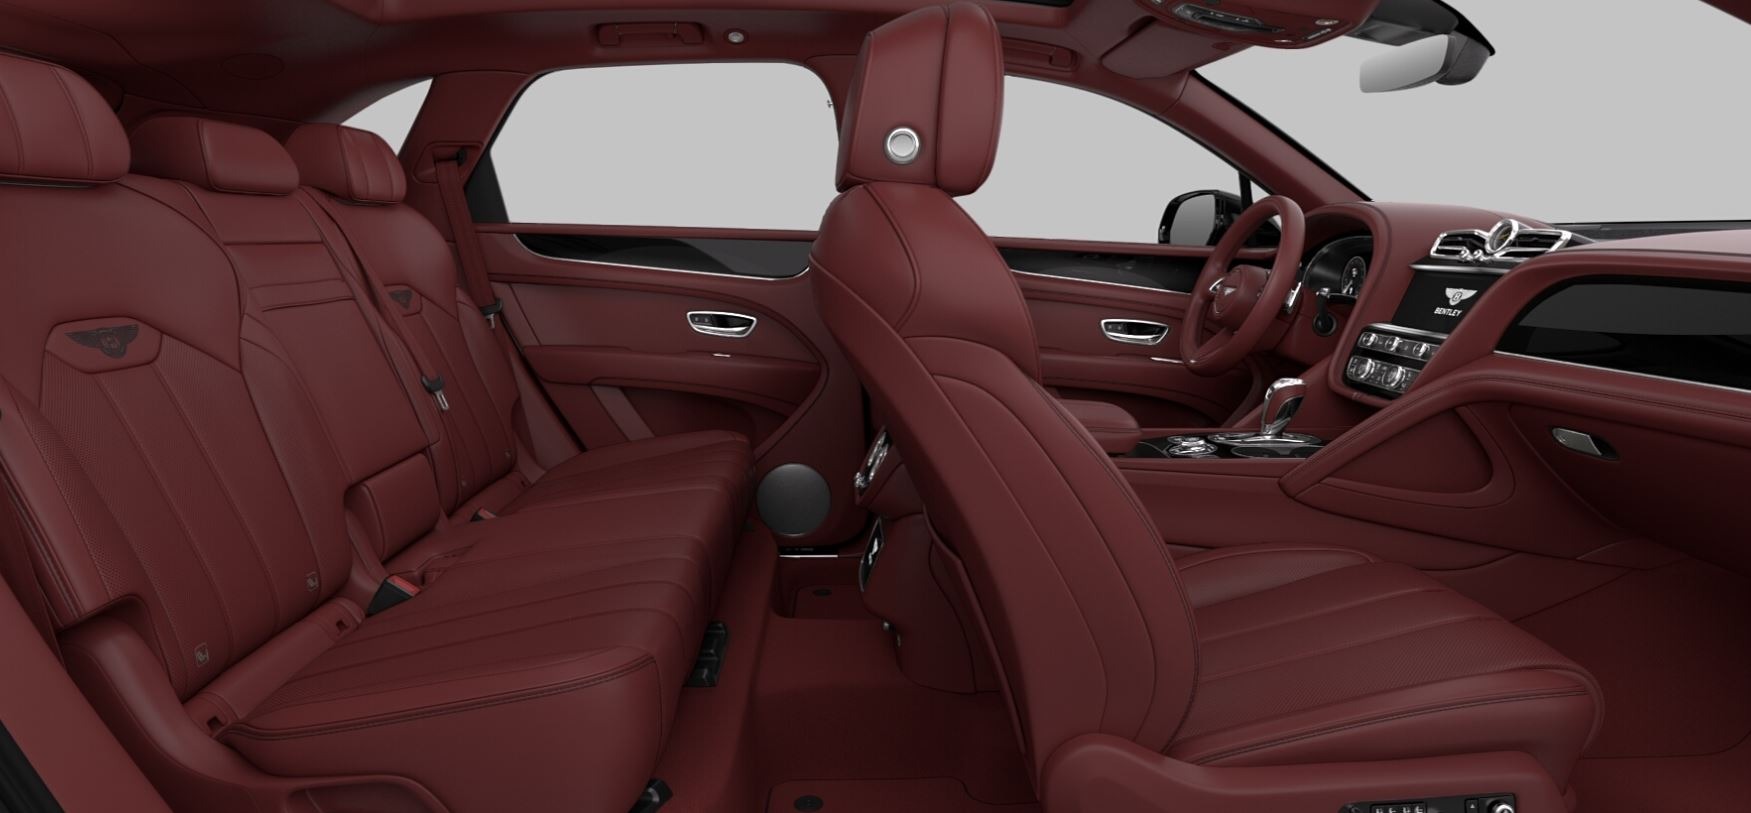 New-2021-Bentley-Bentayga-V8